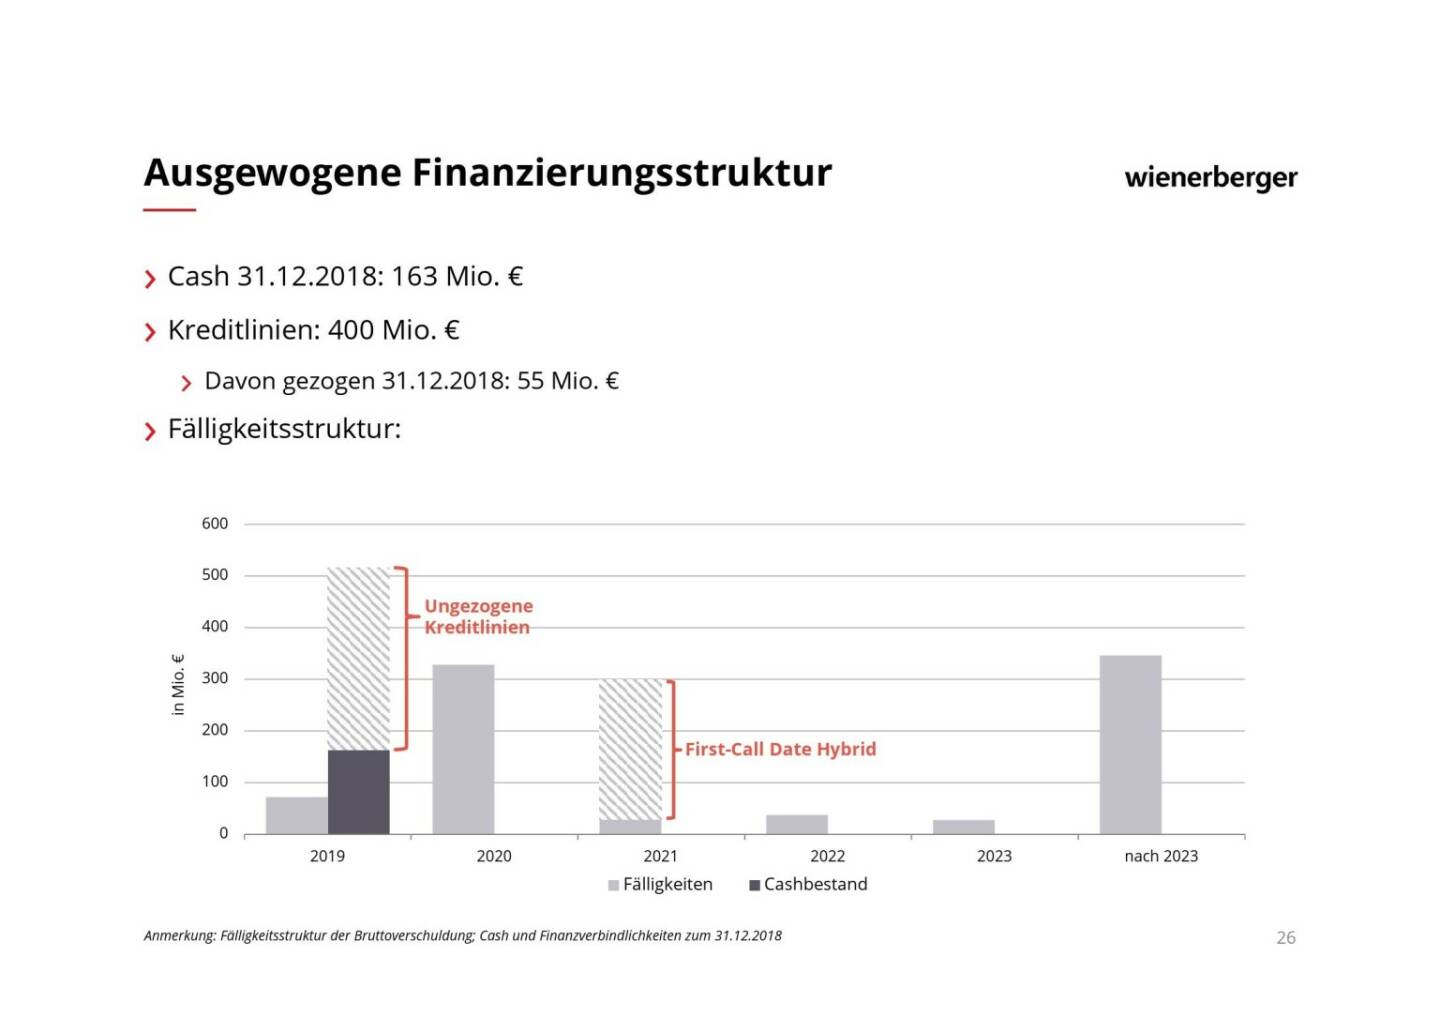 Wienerberger - Ausgewogene Finanzierungsstruktur